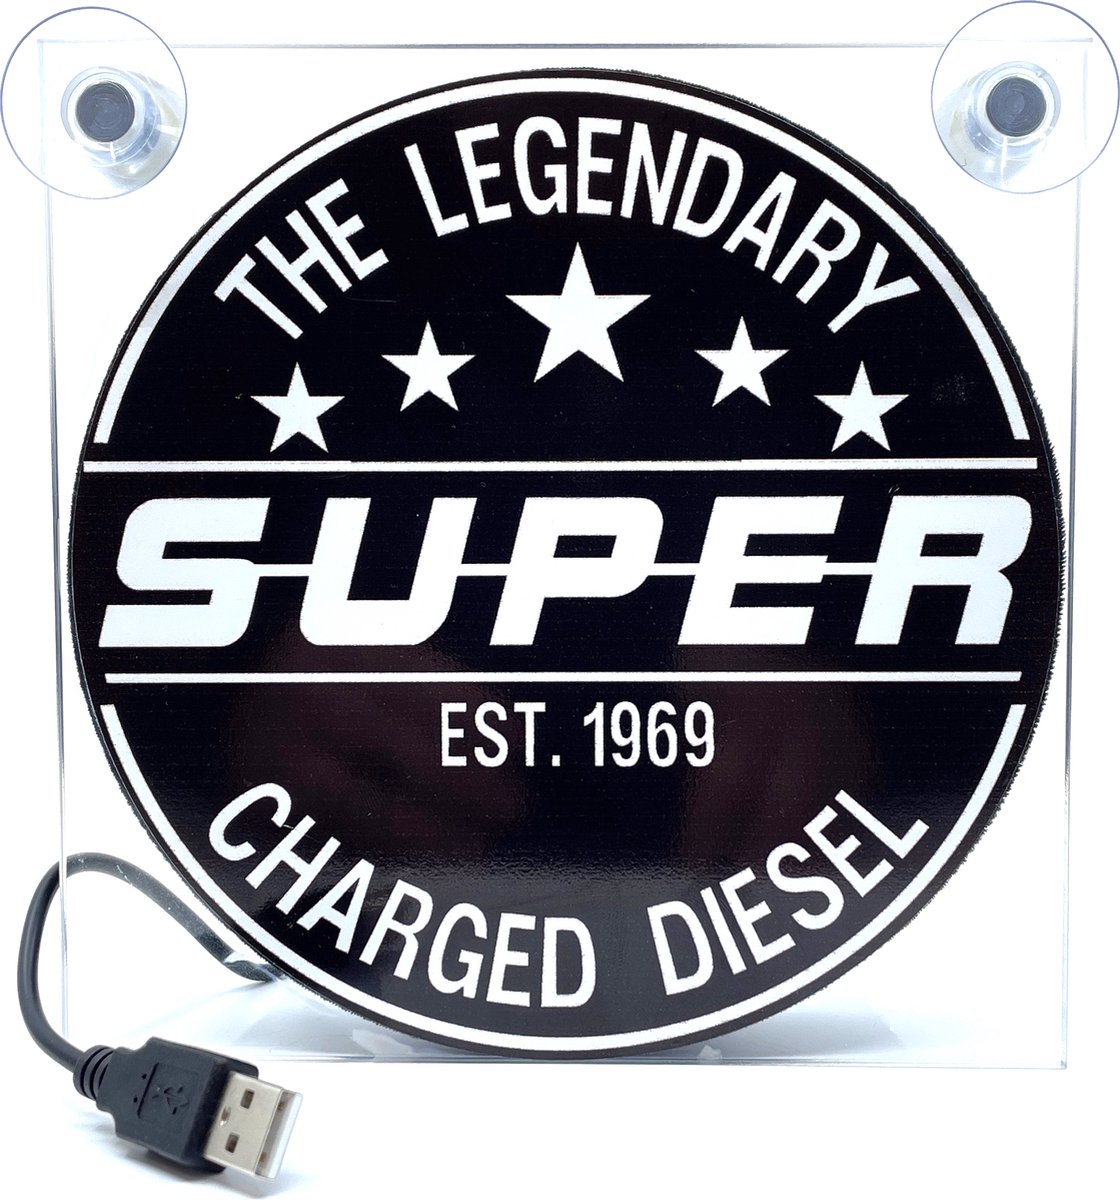 Lichtbakje Deluxe SUPER The Legendary Diesel met USB voor vrachtwagen, tractor, cabine, truck, caravan, enz